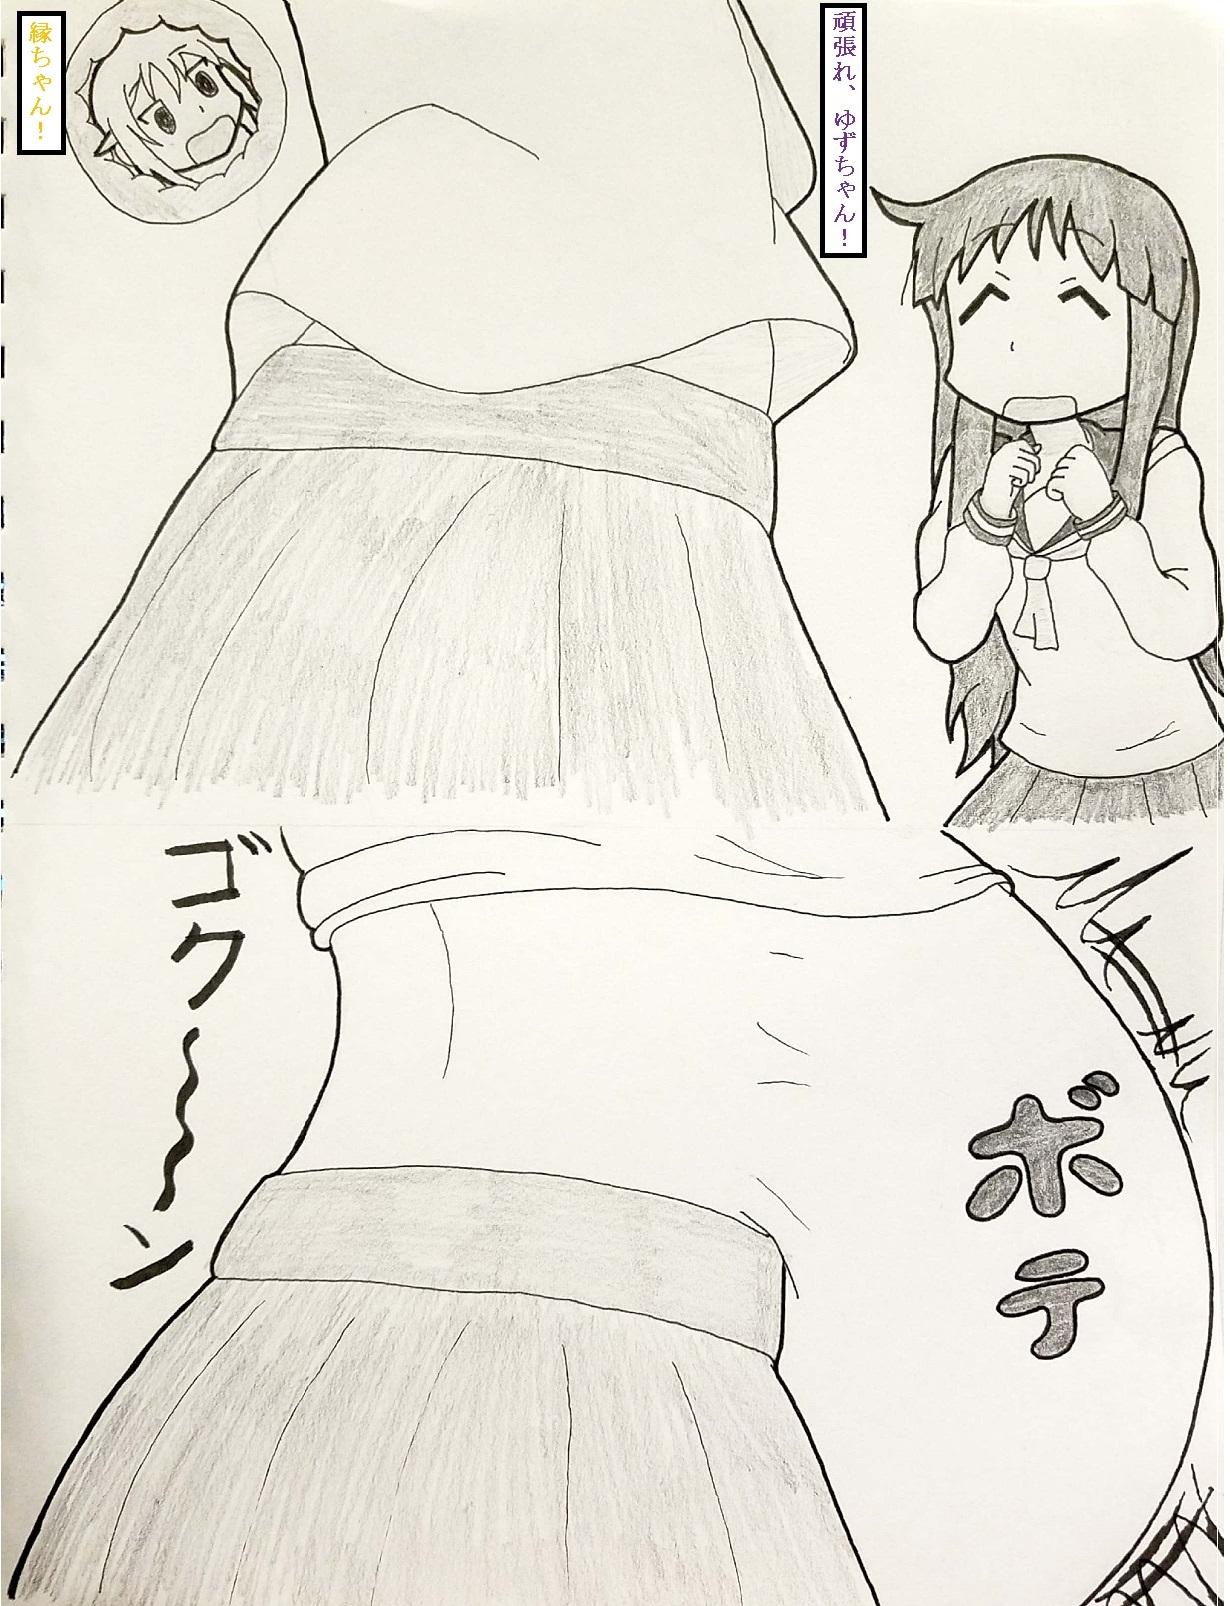 Pissing Yuyushiki marunomi manga - Yuyushiki 18yearsold - Page 5